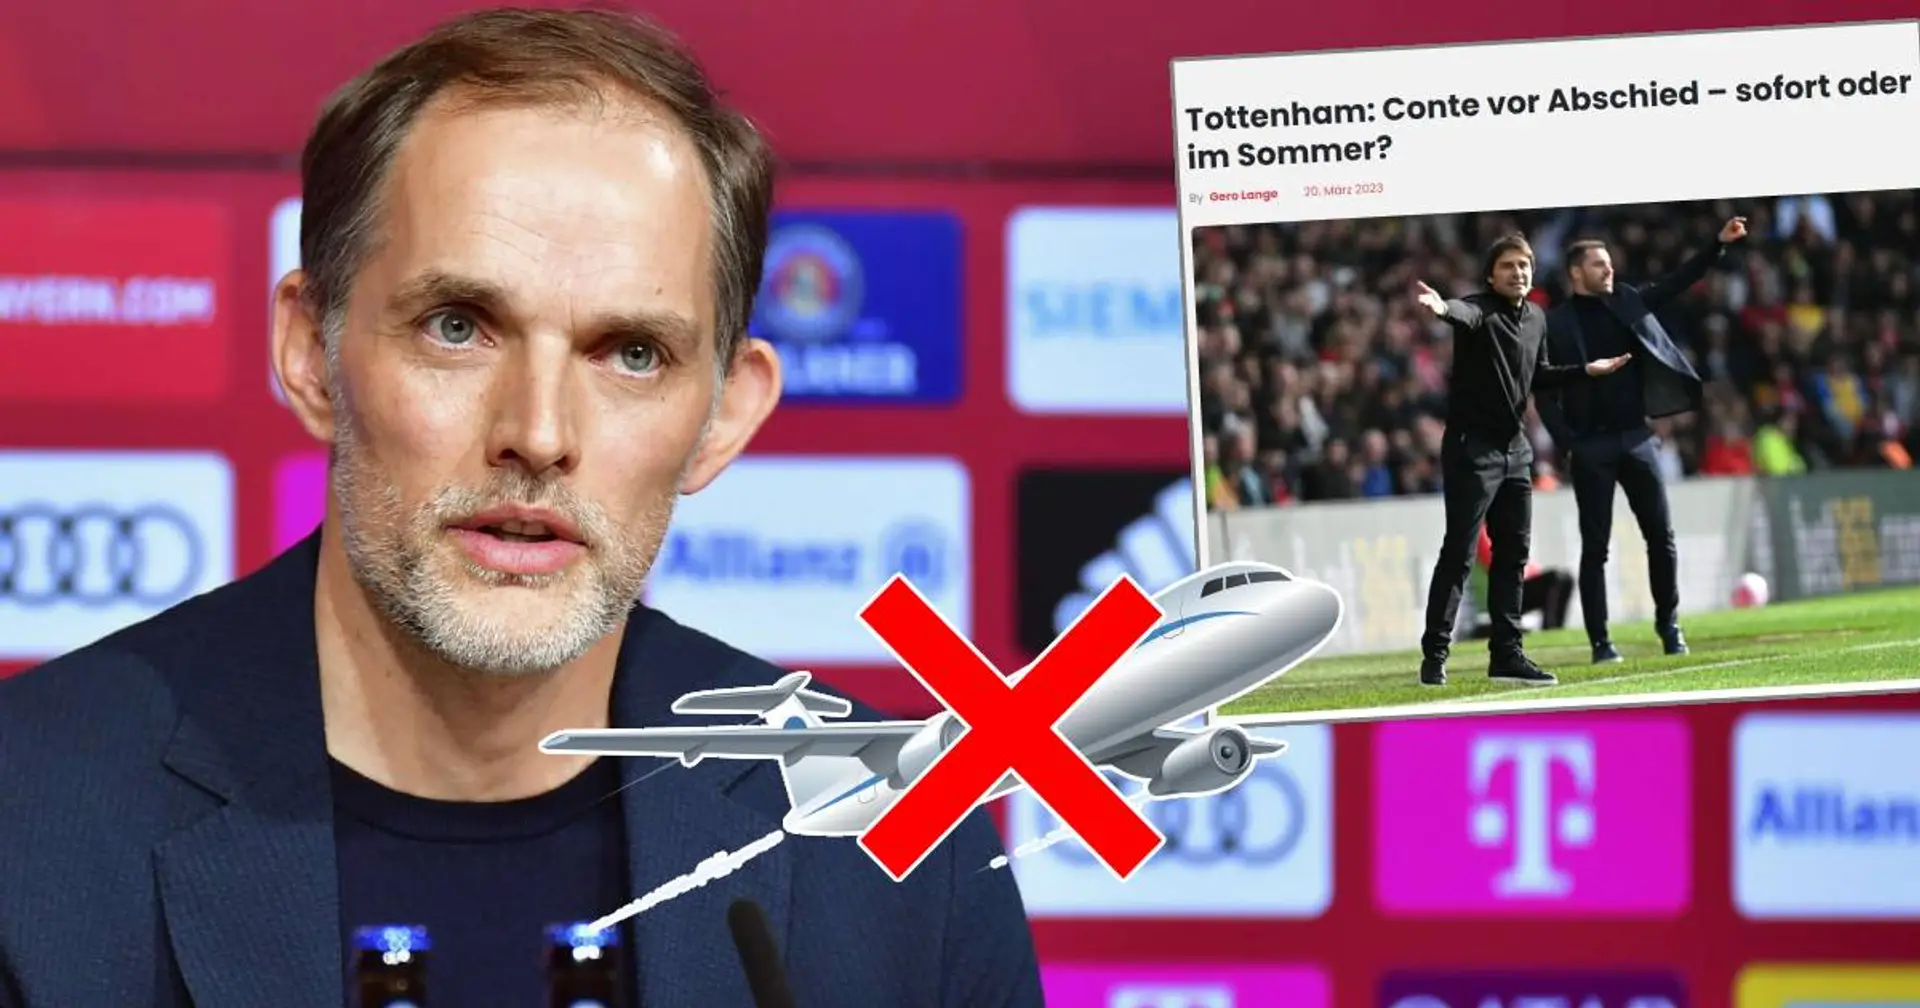 So schnell kann es gehen: Tuchel plante Gespräche mit Tottenham vor einigen Tagen, aber Bayerns Angebot änderte alles